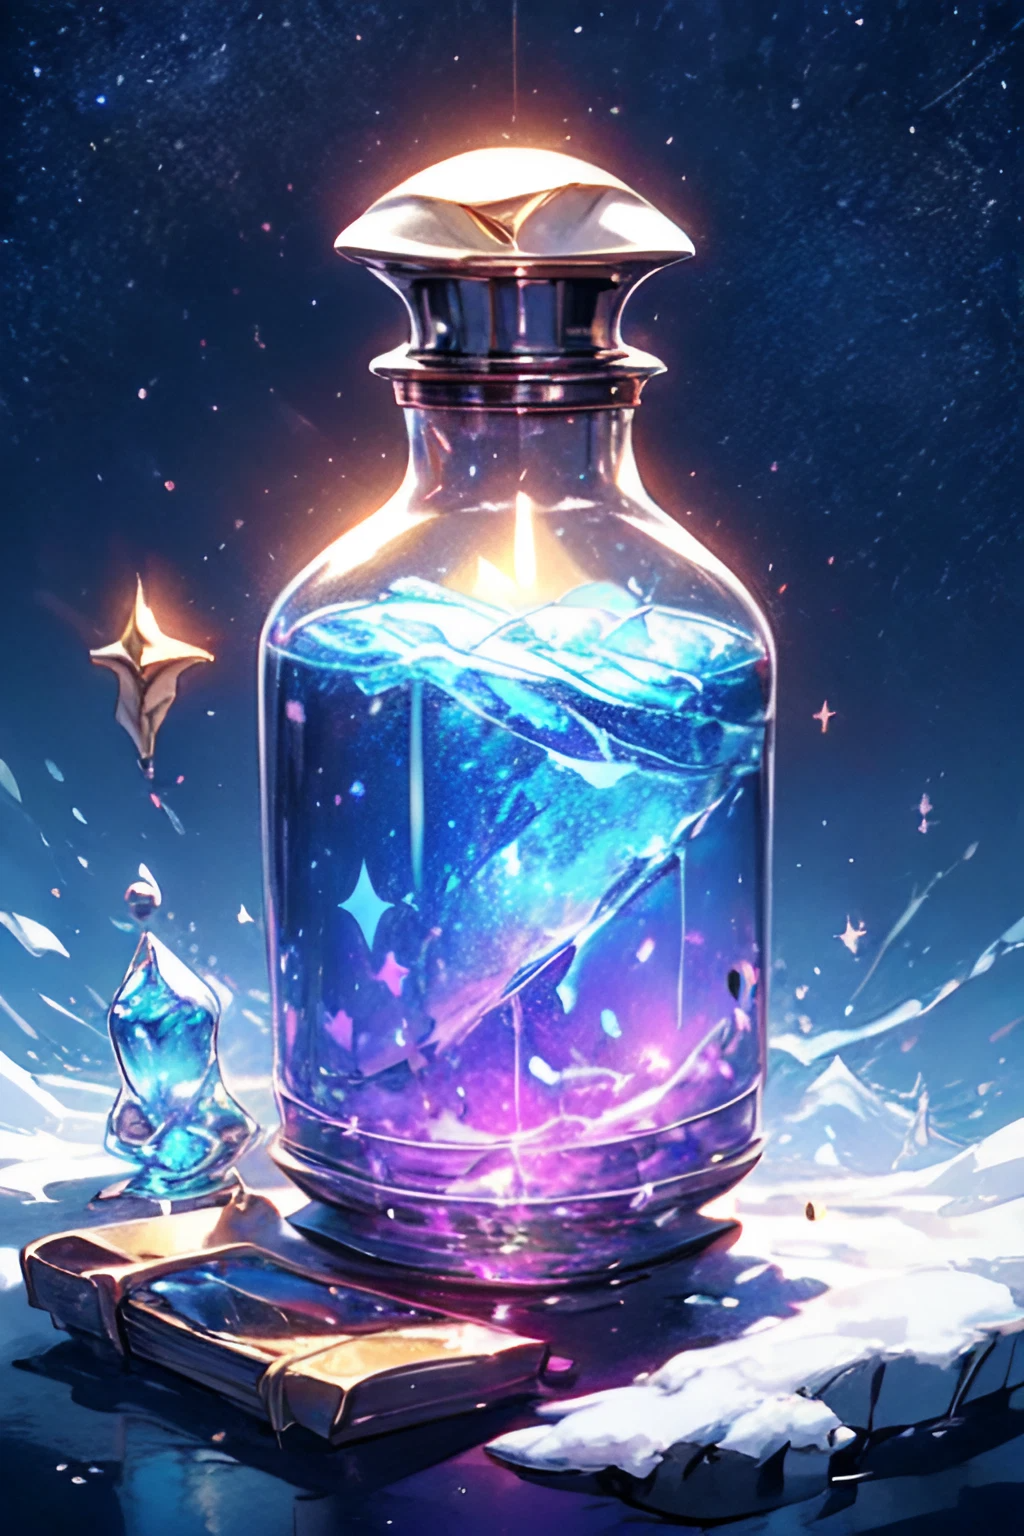 かっこいい虹色とオーロラ色の魔法のグラス瓶＆ファンタジーアニメ風のリアル無料画像素材